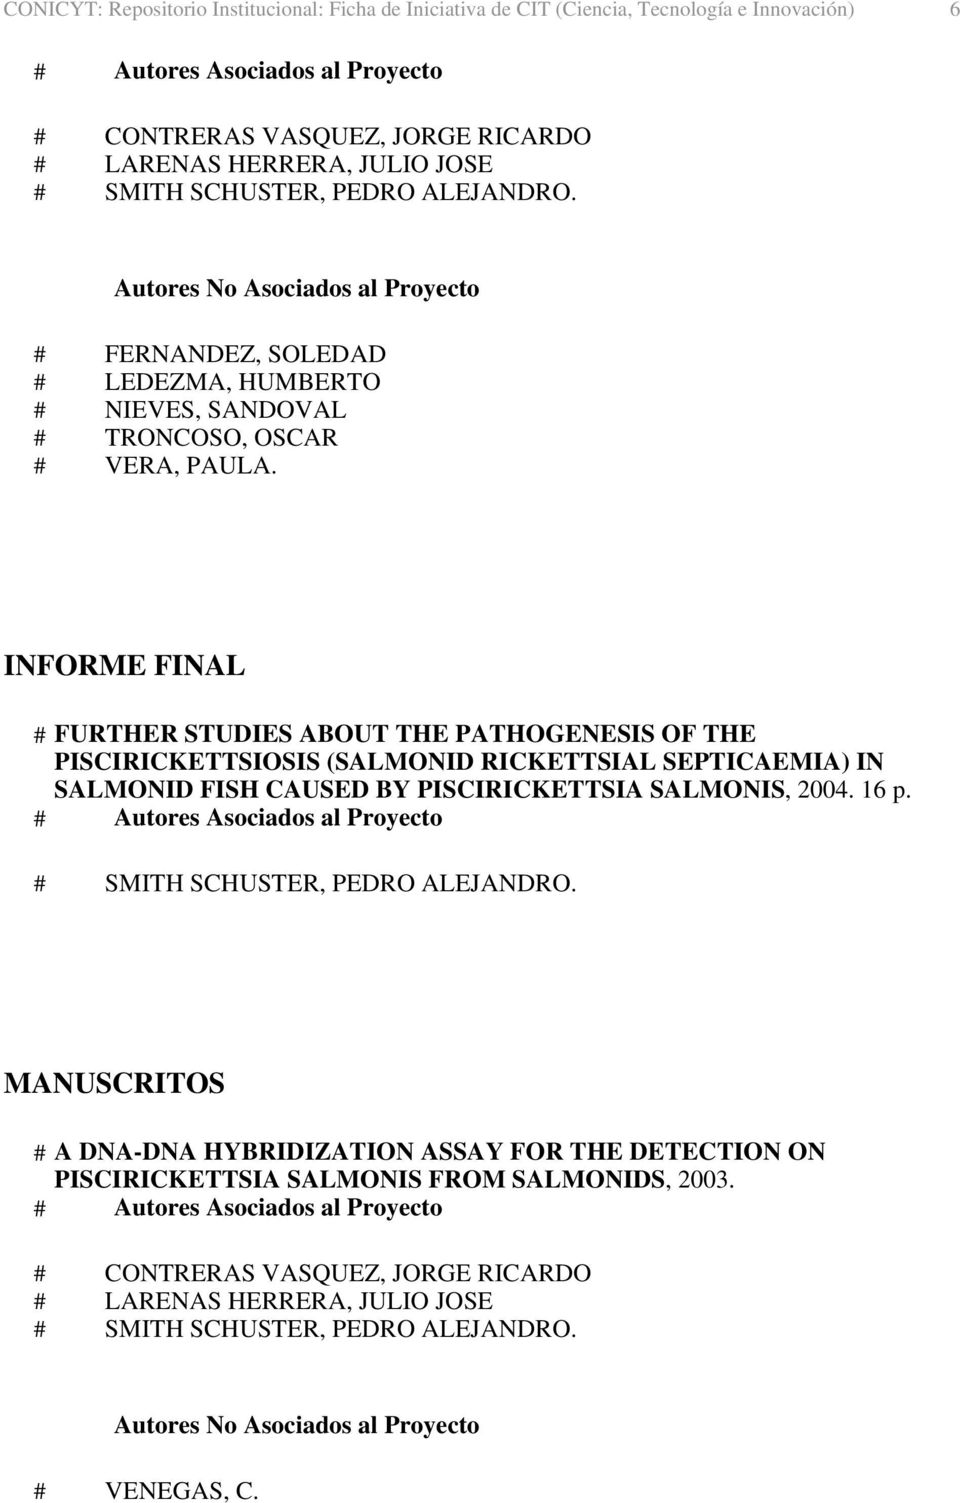 PISCIRICKETTSIOSIS (SALMONID RICKETTSIAL SEPTICAEMIA) IN SALMONID FISH CAUSED BY PISCIRICKETTSIA SALMONIS, 2004. 16 p.